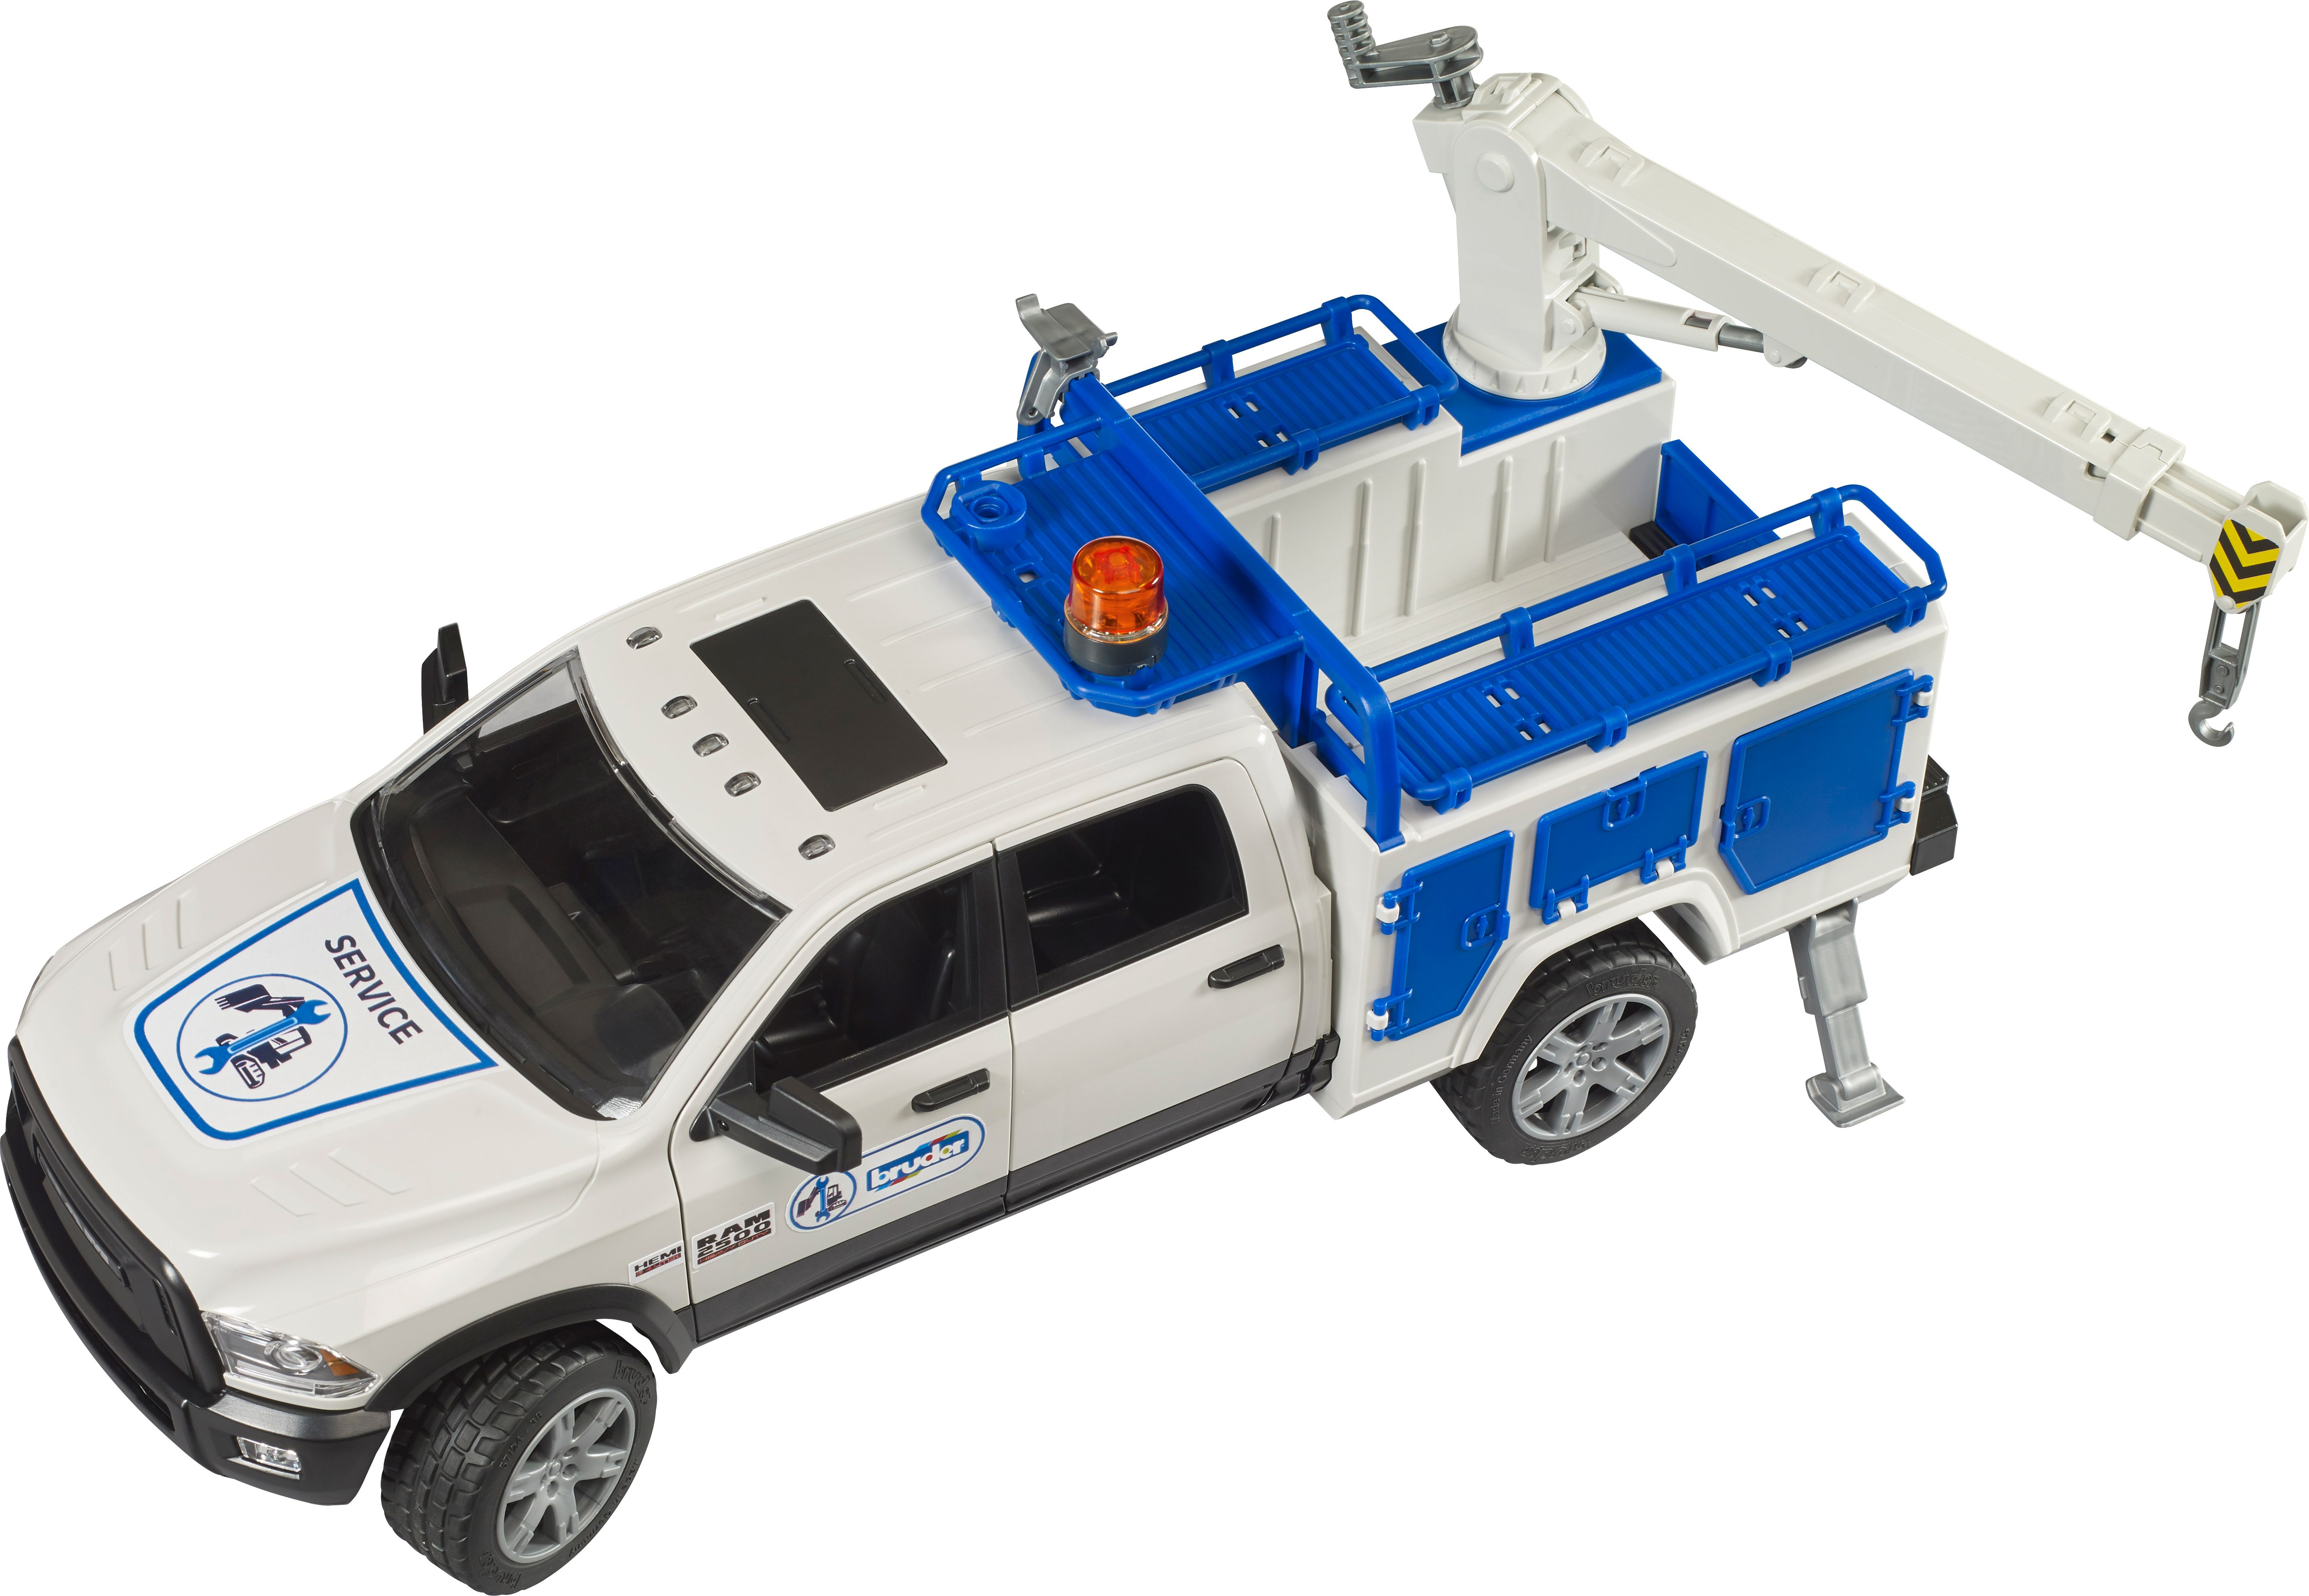 02509 2500 Service BRUDER Truck Rundumleuchte RAM Spielzeugauto Kran und mit